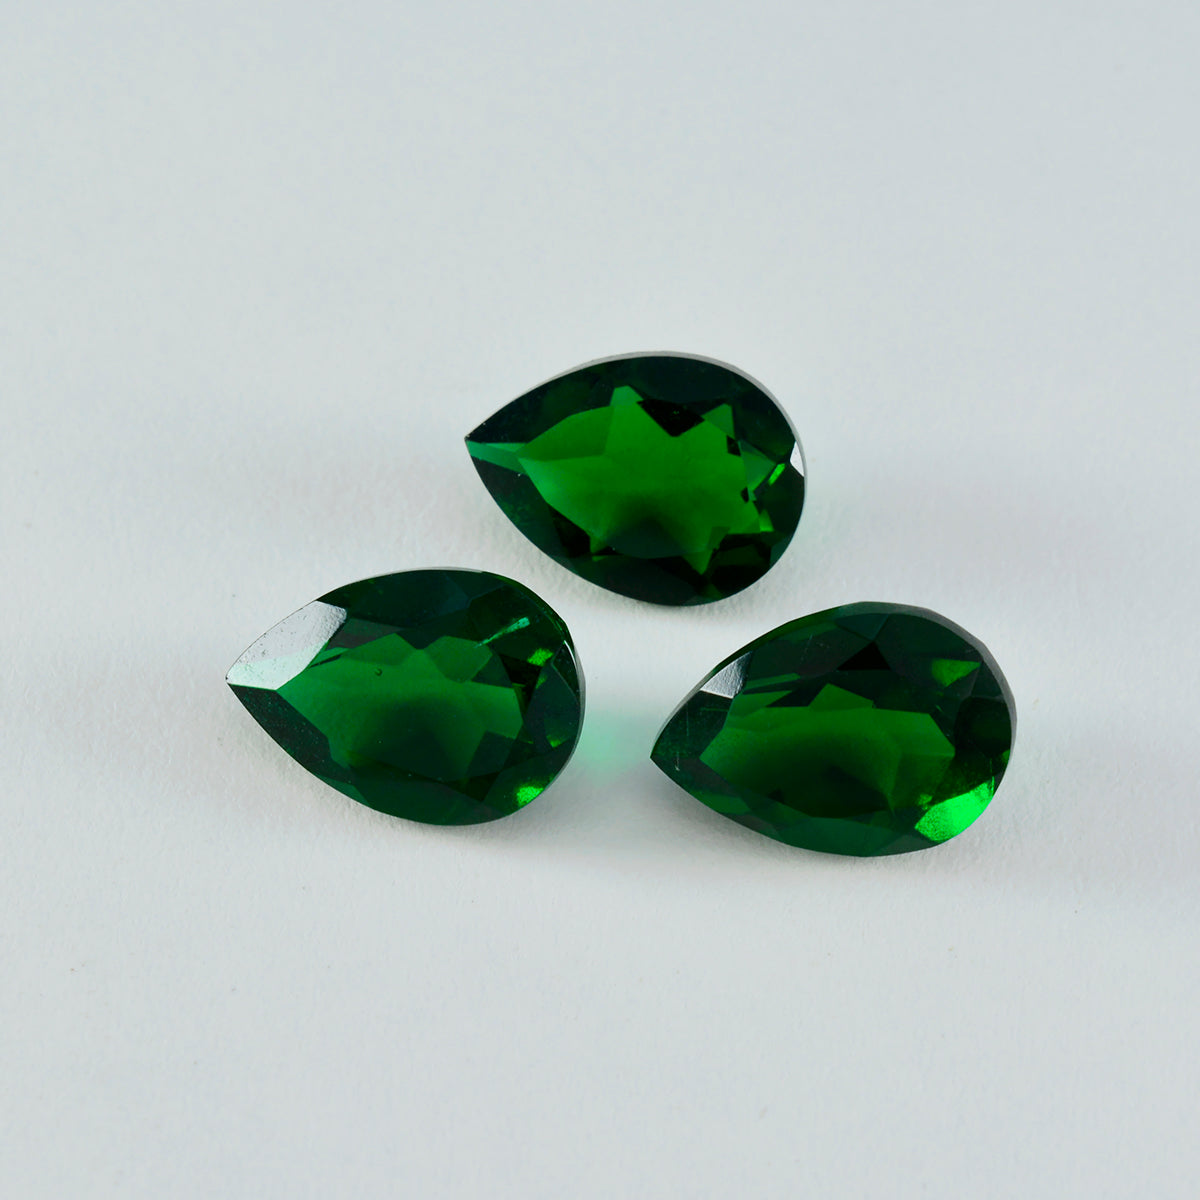 Riyogems 1 pieza Esmeralda verde CZ facetada 2x2 mm forma redonda piedra suelta de calidad increíble